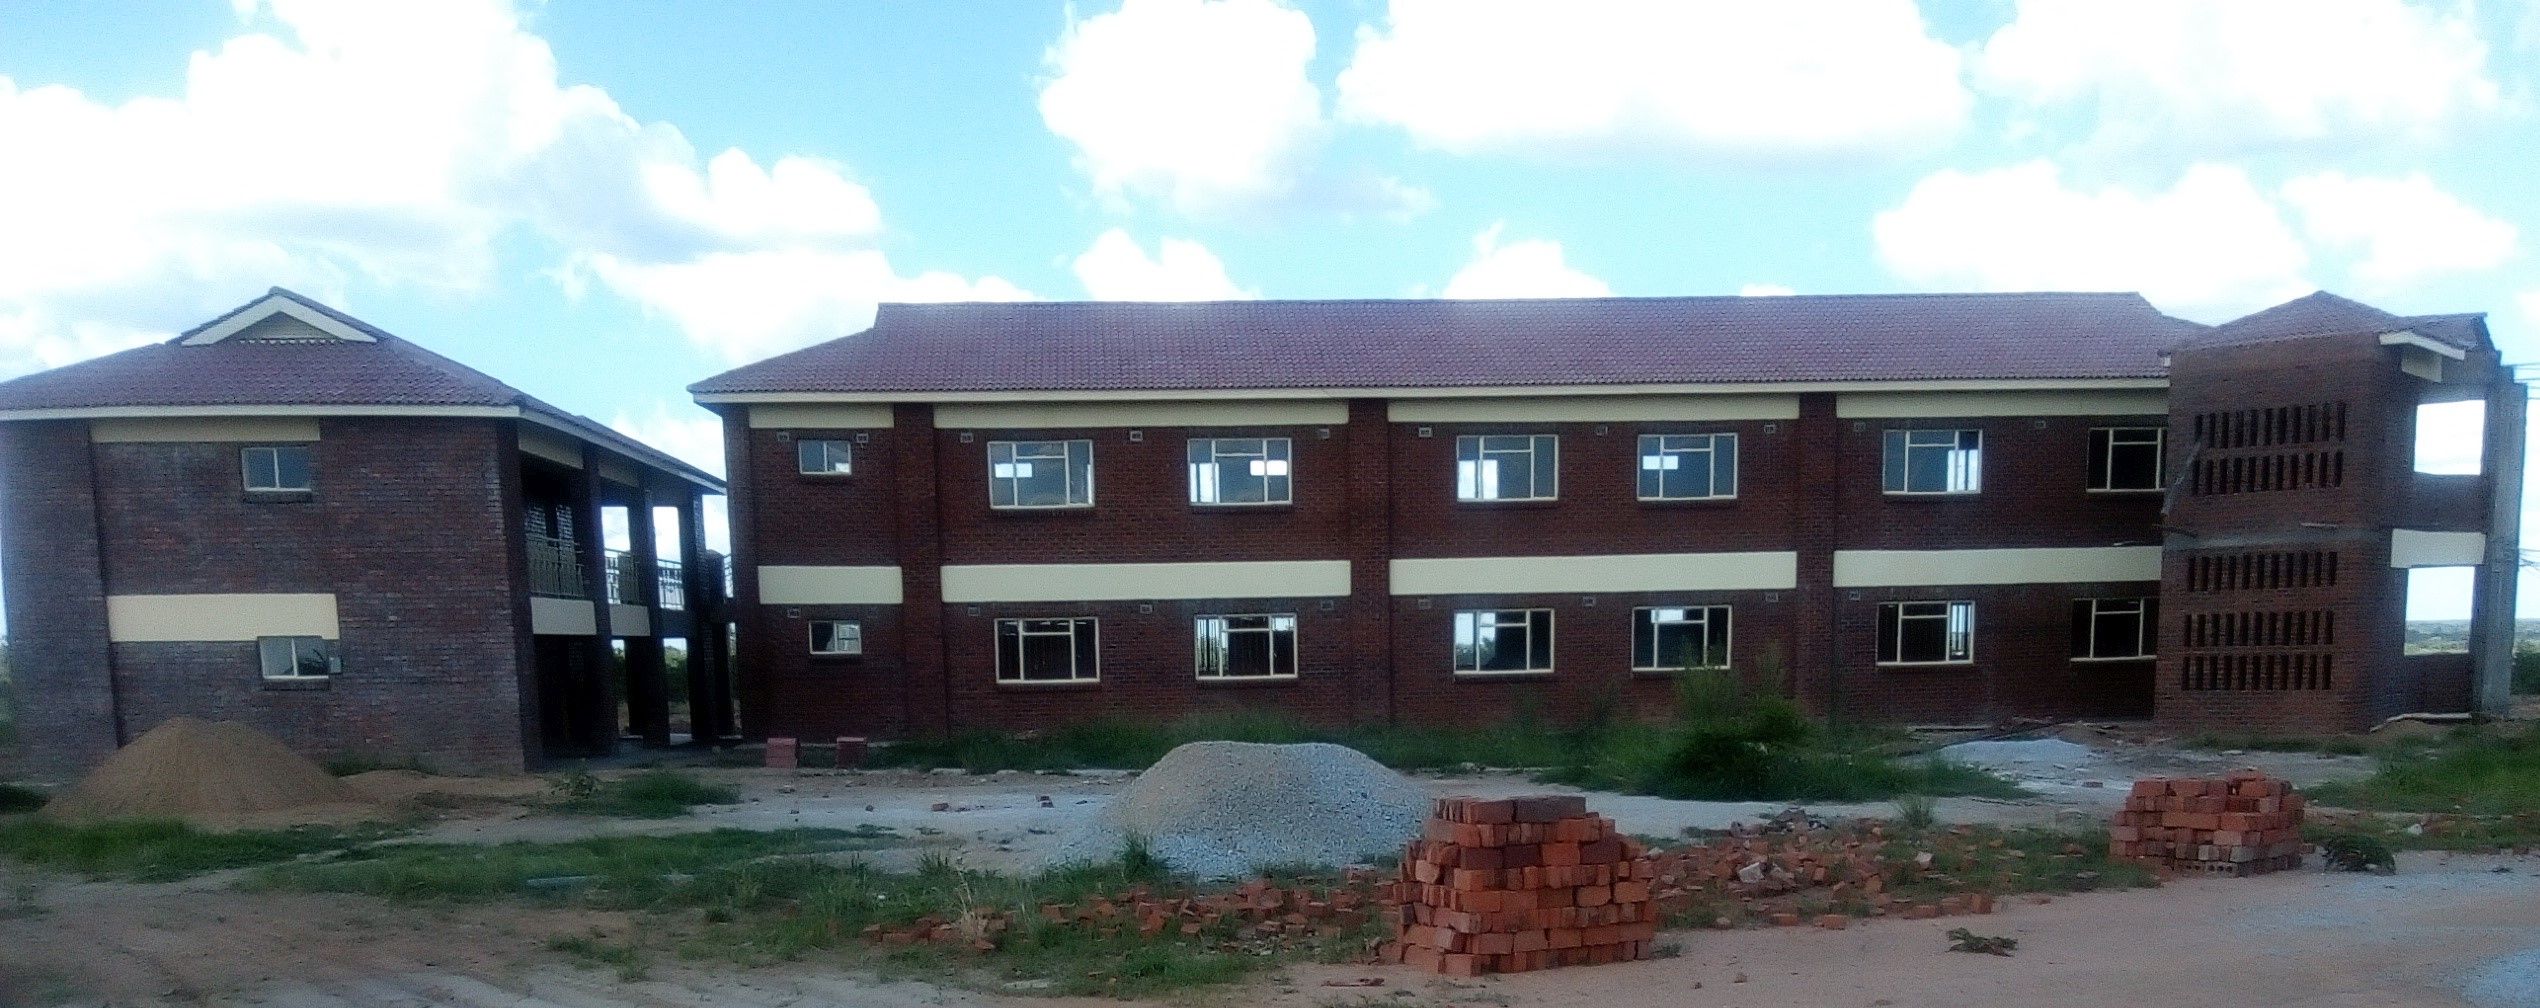 simbabwe-mary-ward-highschool-gebaeude.jpg